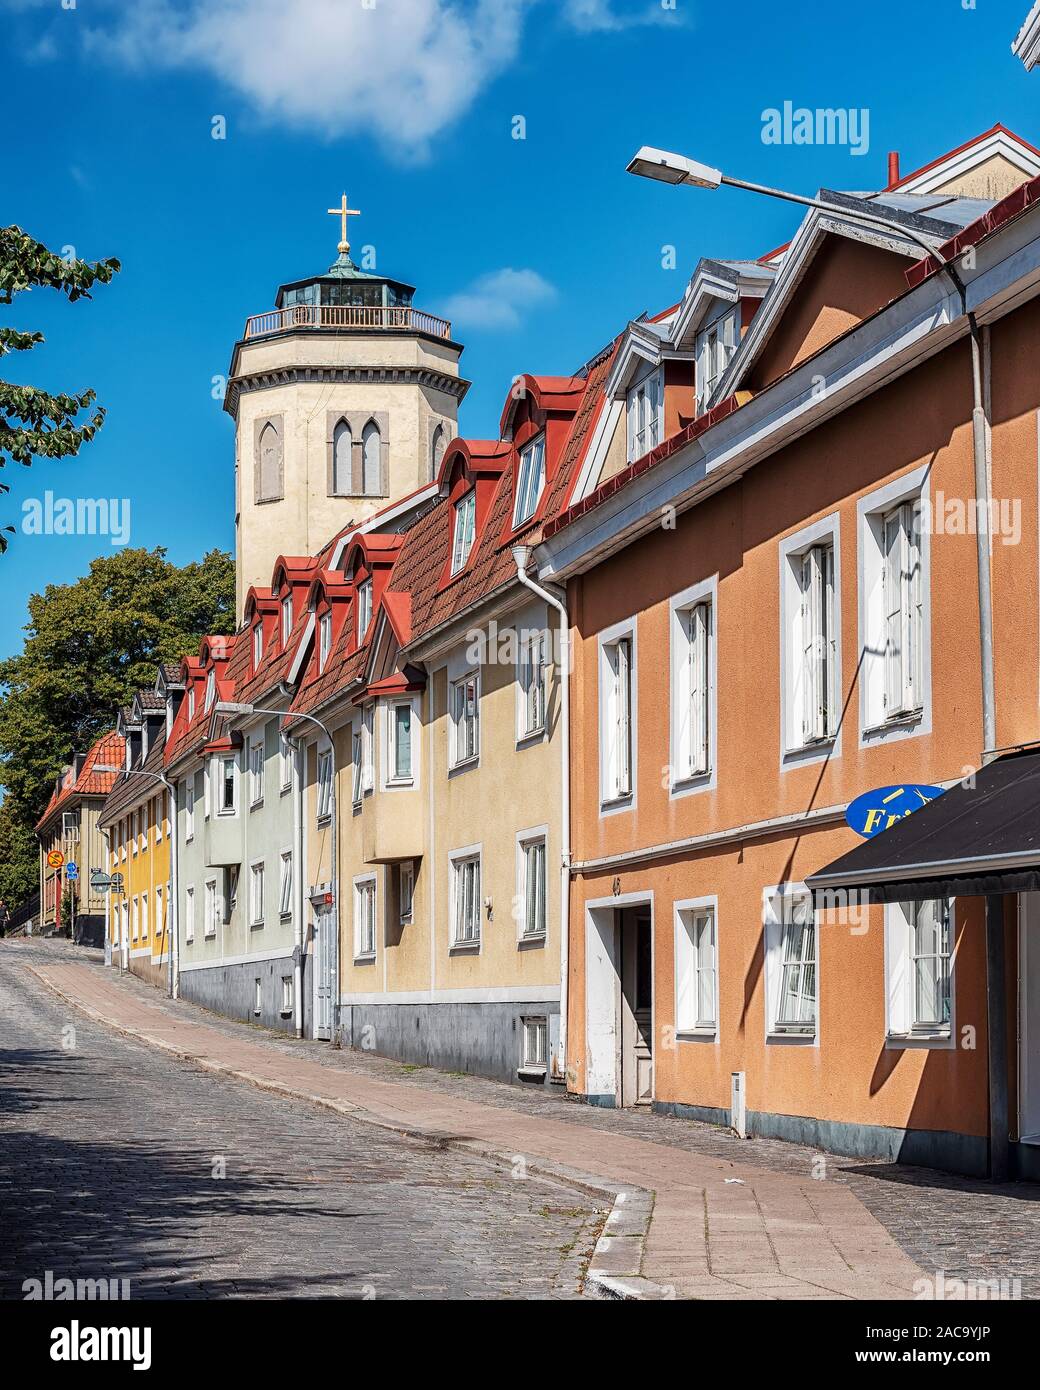 KARLSHAMN, Schweden - 24. AUGUST 2019: Eine typische Straße Blick von der Schwedischen Karlshamn. Stockfoto